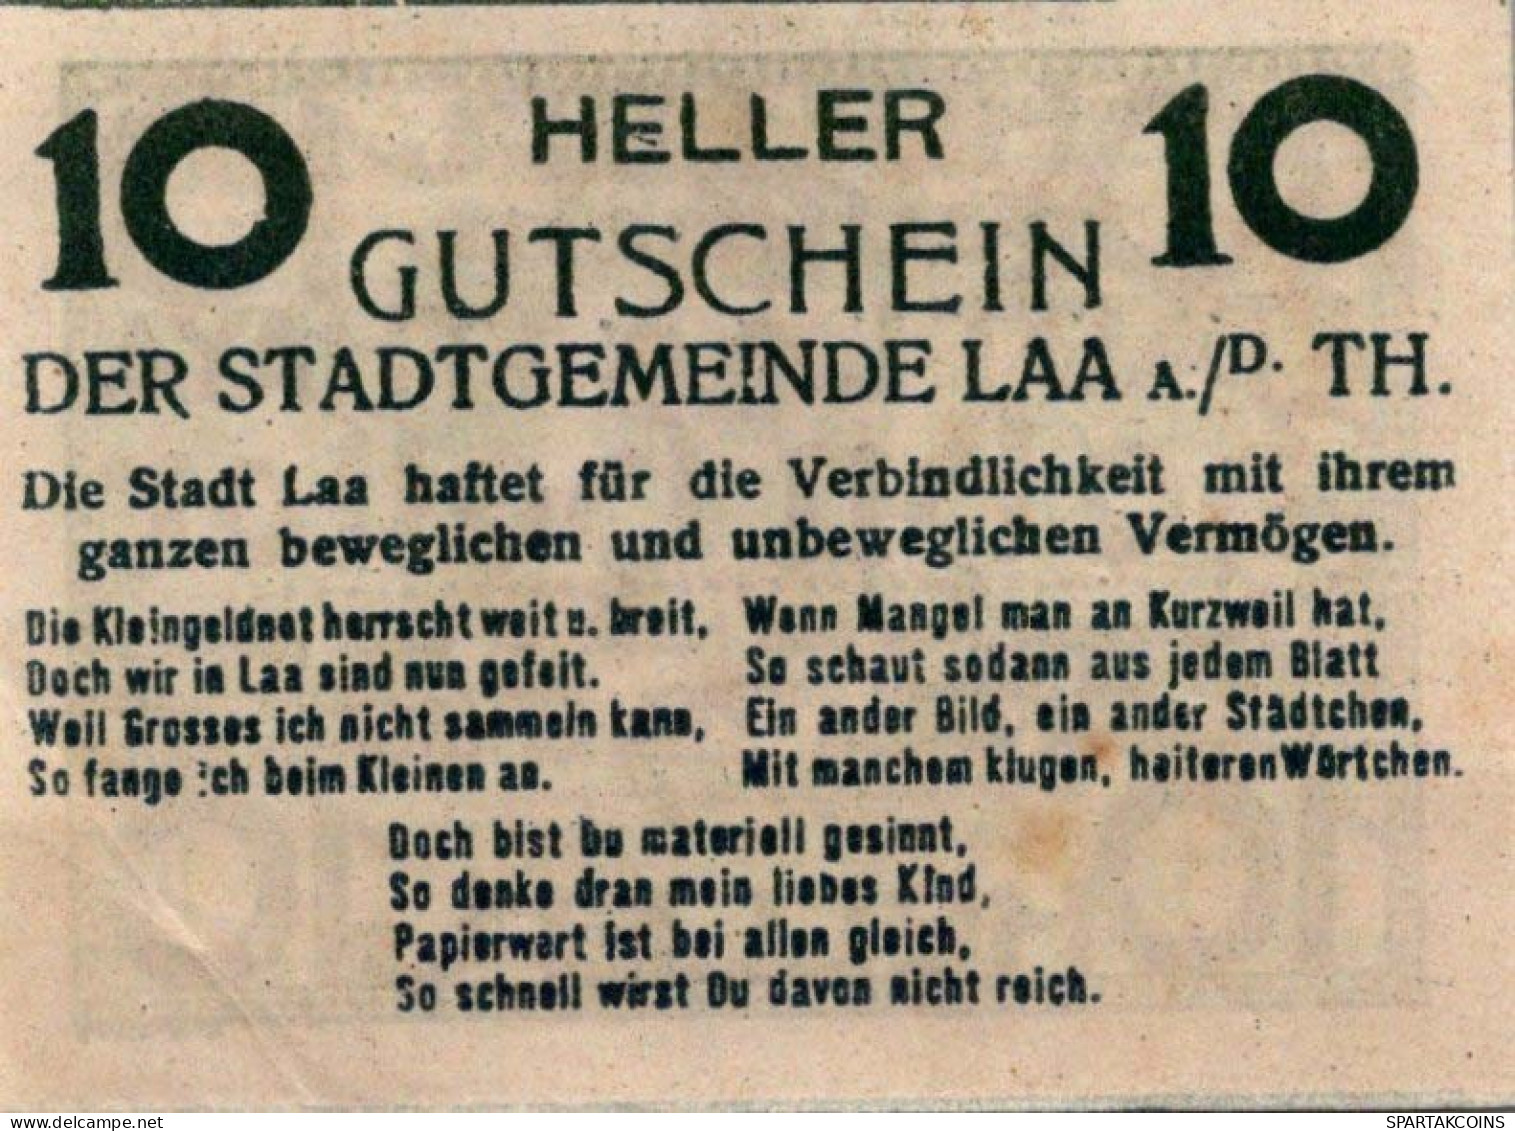 10 HELLER 1920 Stadt Laa An Der Thaya Österreich Notgeld Banknote #PD826 - [11] Emissions Locales